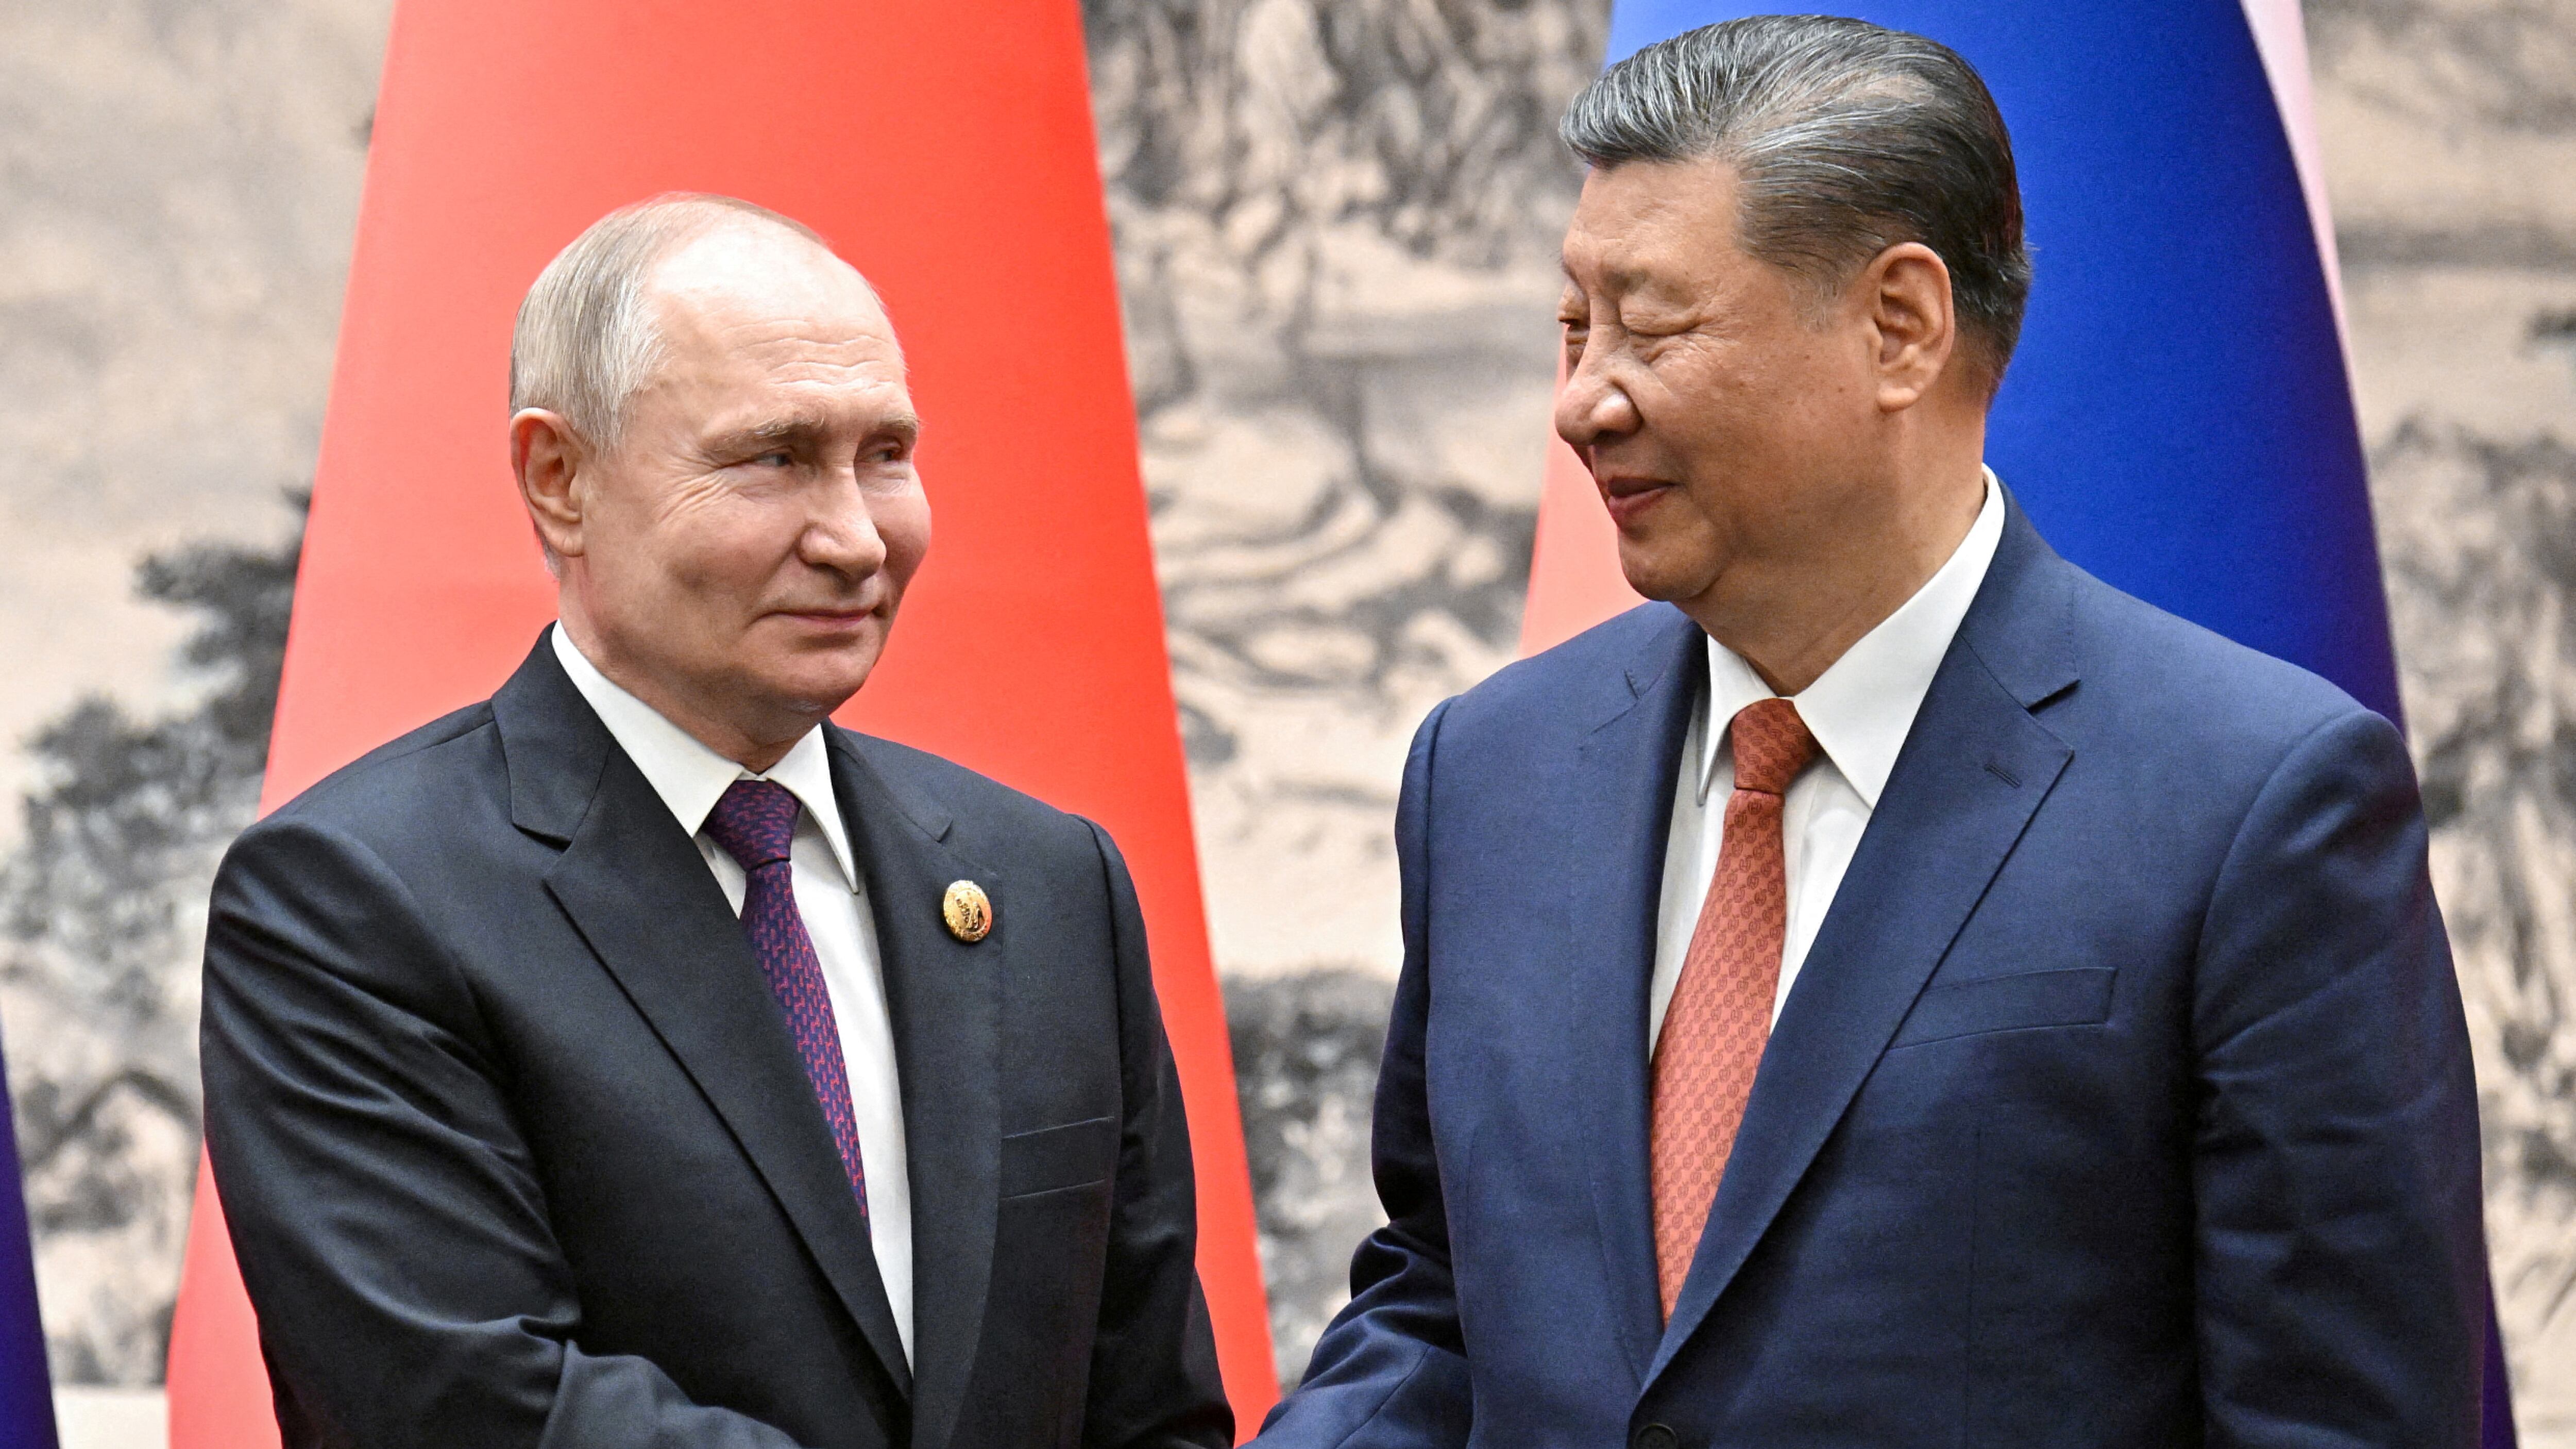 El presidente ruso, Vladimir Putin; junto a su homólogo chino, Xi Jinping, en un encuentro en Beijing en mayo (Sputnik/Sergei Bobylev/Pool via REUTERS)